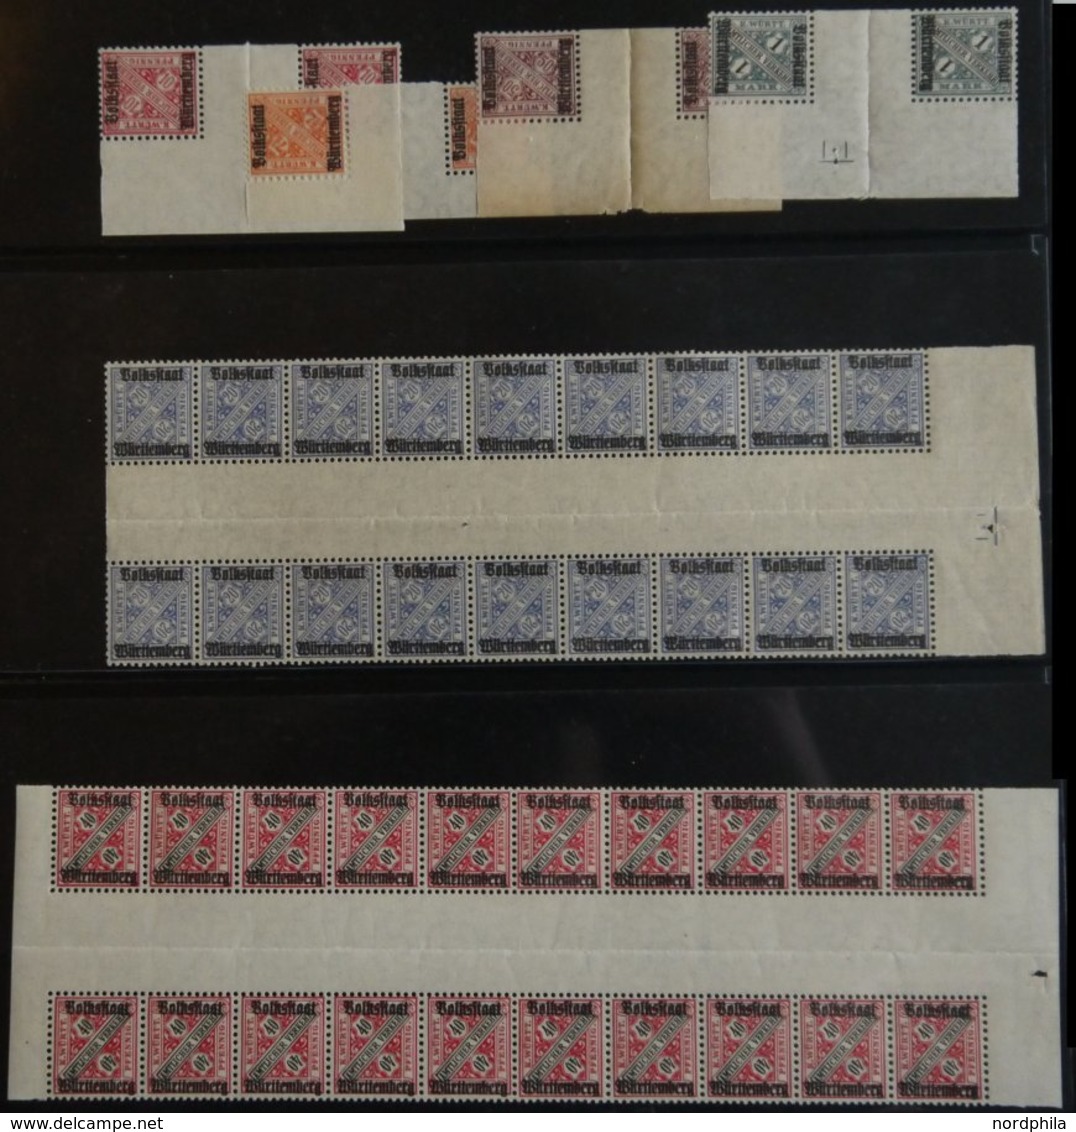 1875-1923, gut sortierte reichhaltige Dublettenpartie Neue Währung und Dienstmarken I und II von über 1600 Werten, Fundg